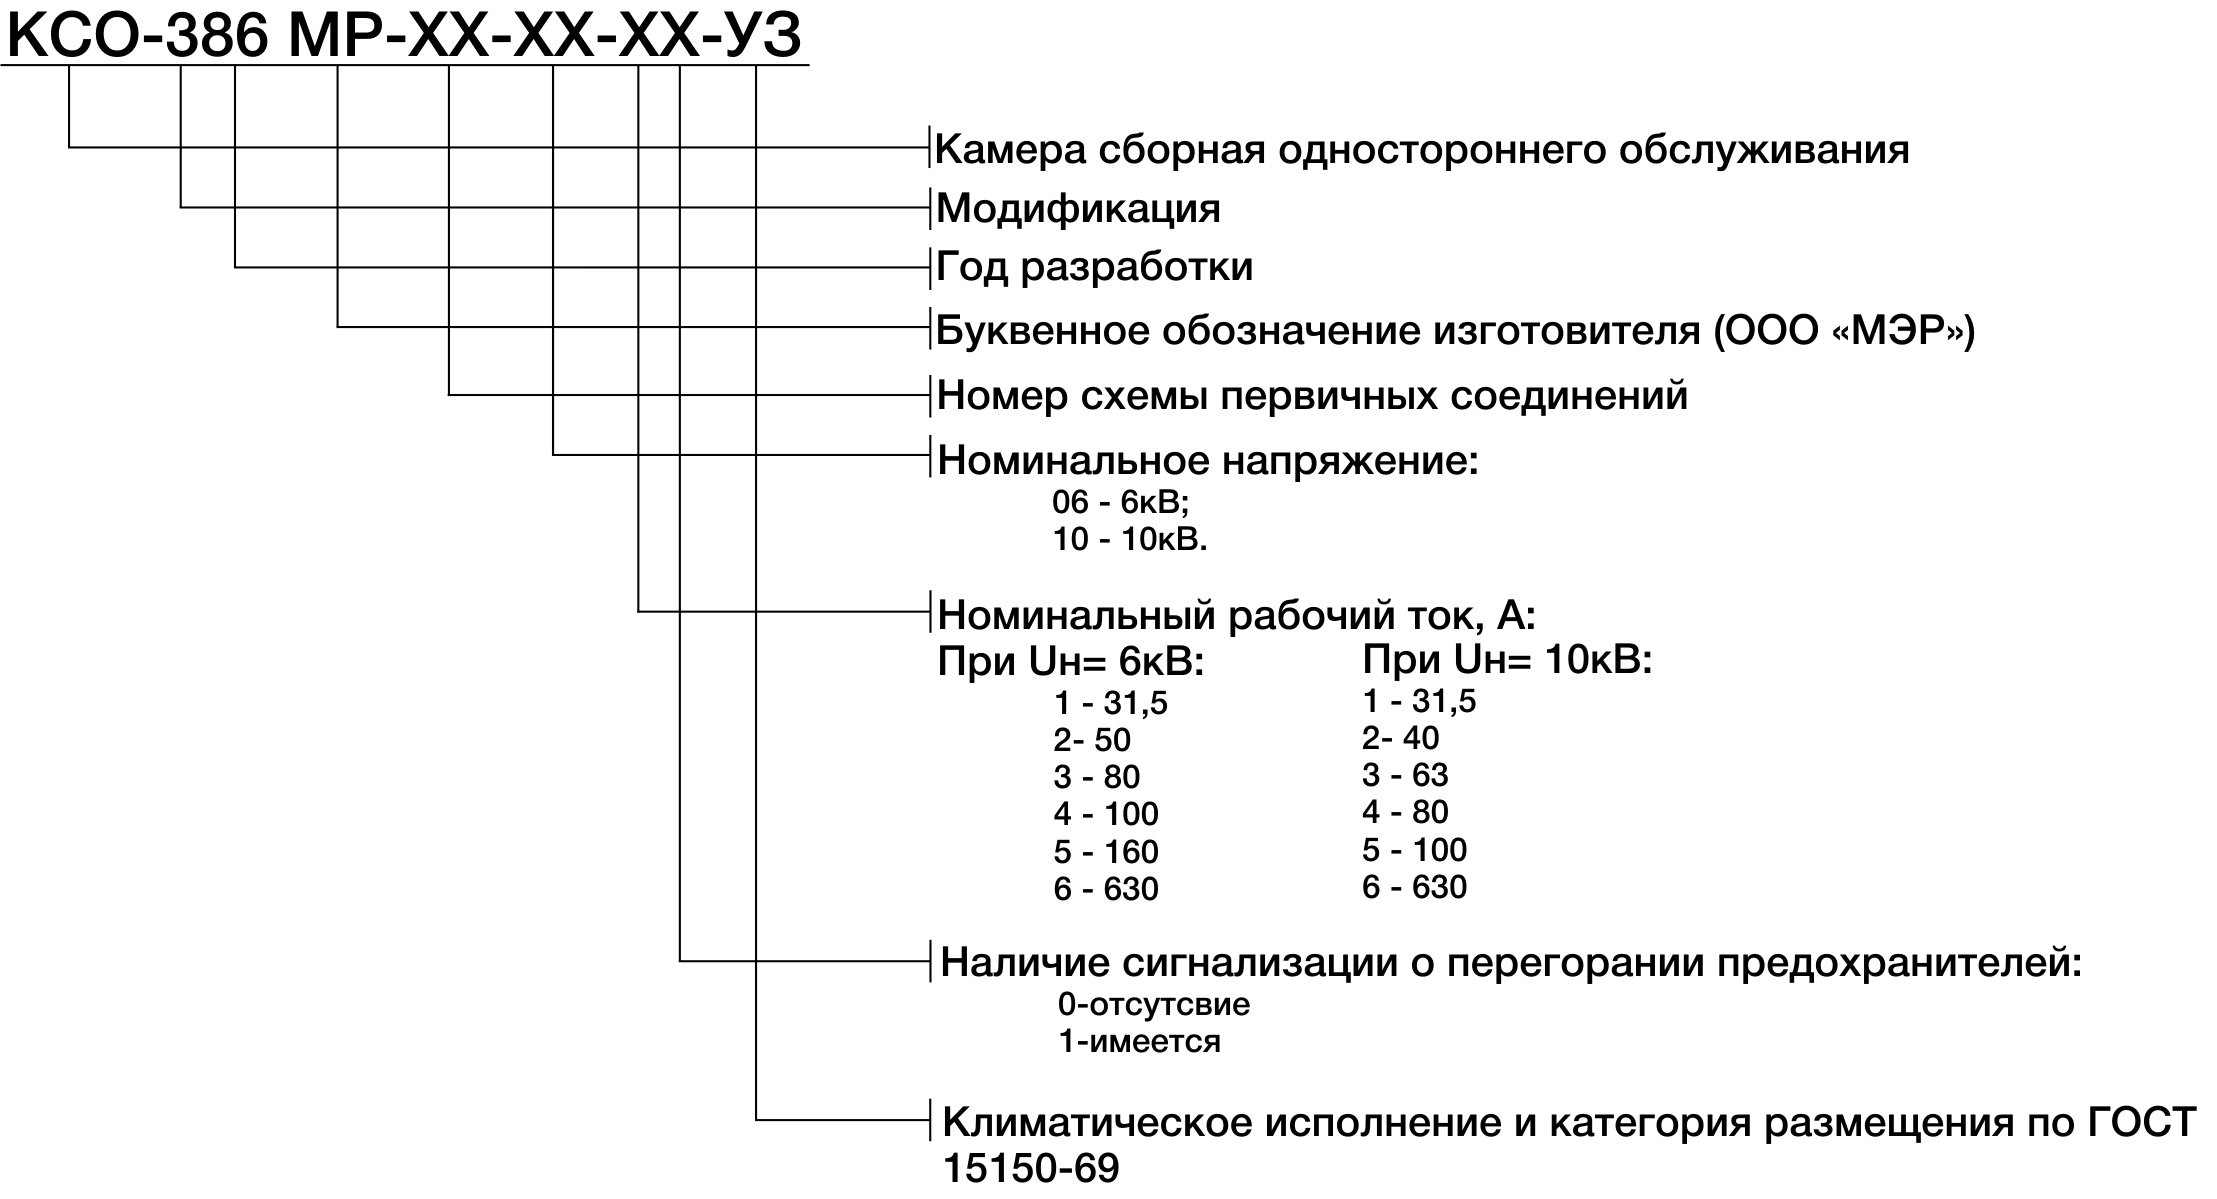 Структура условного обозначения КСО-386МР